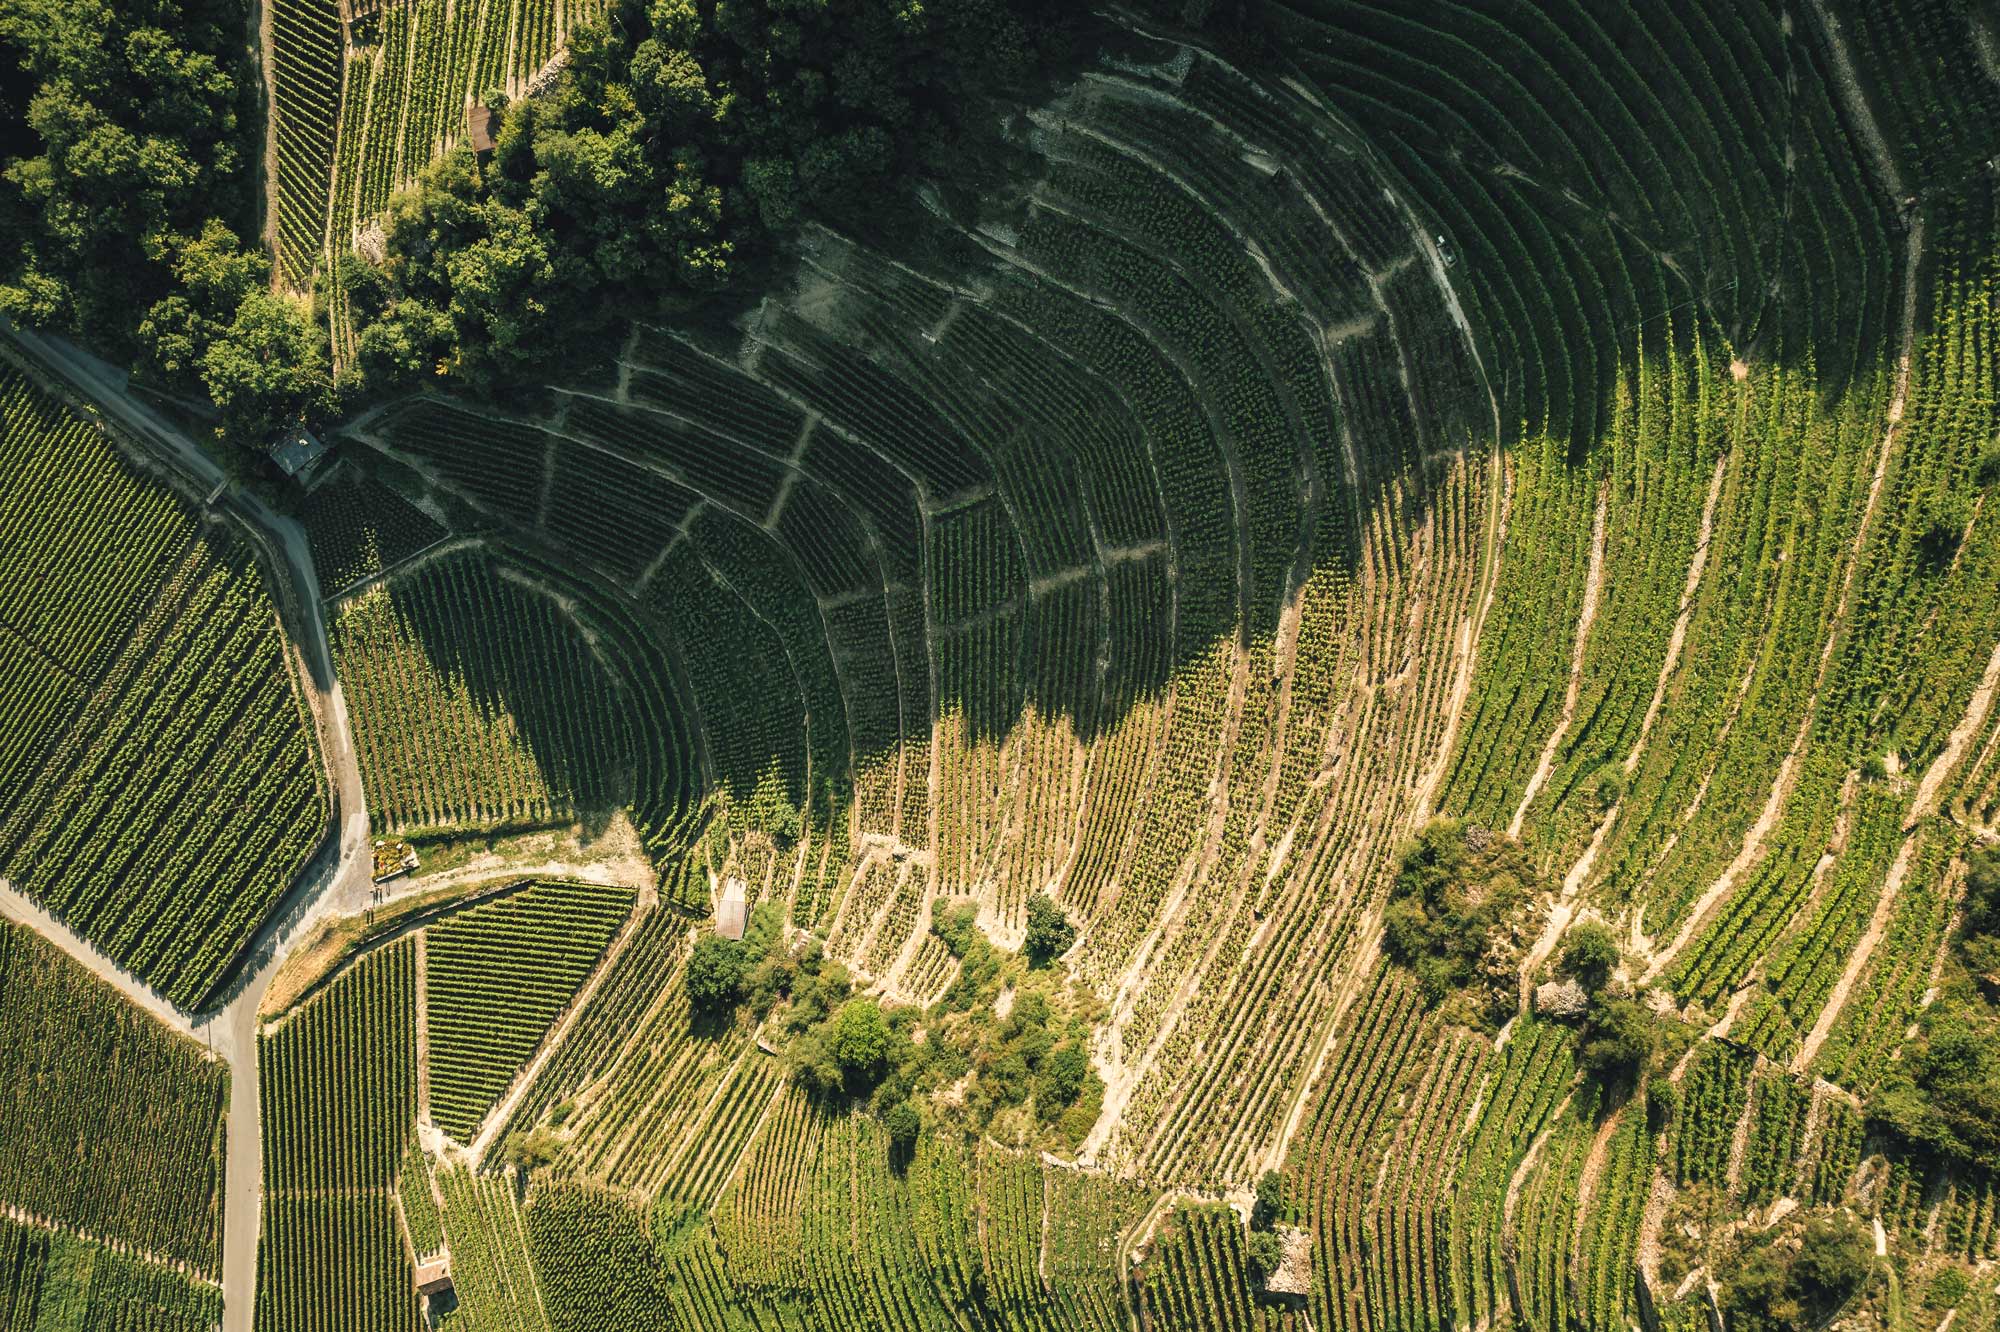 Les terrasses de vigne de Fully, Valais, Suisse